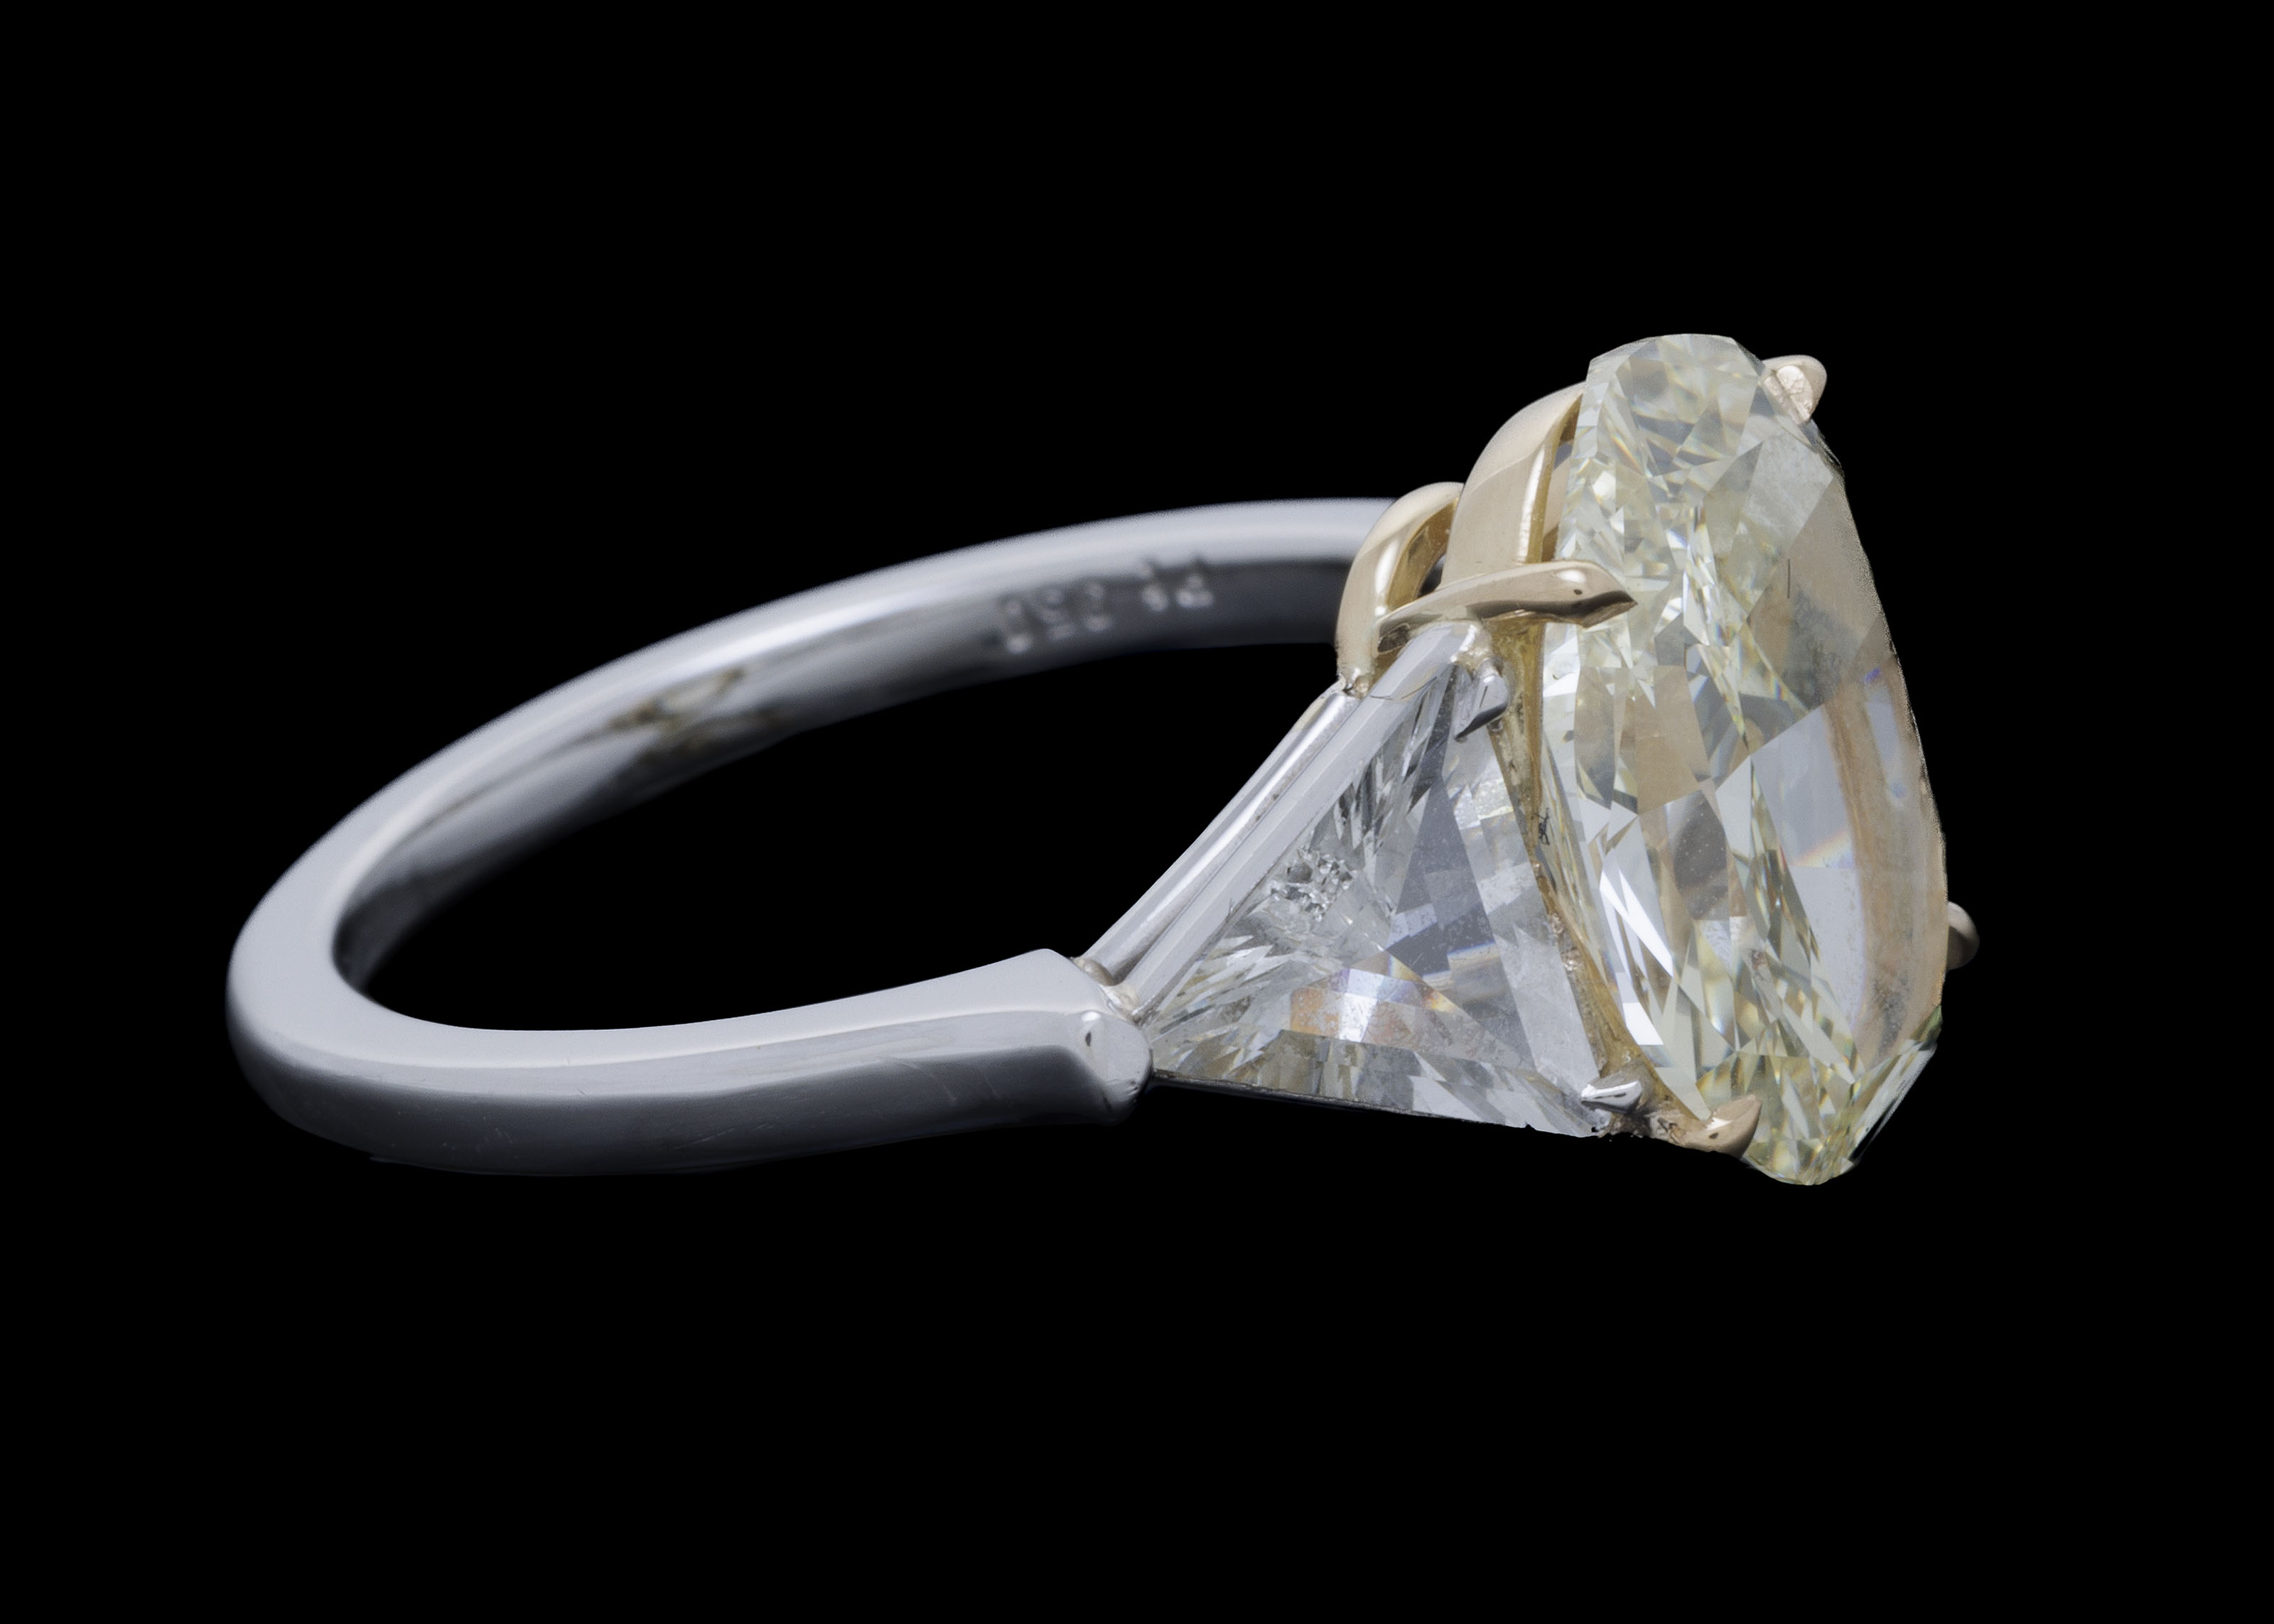 Bague platine et or 750 sertie d'un diamants taille ovale de 3.25 carats épaulé de deux diamants tai - Image 2 of 3